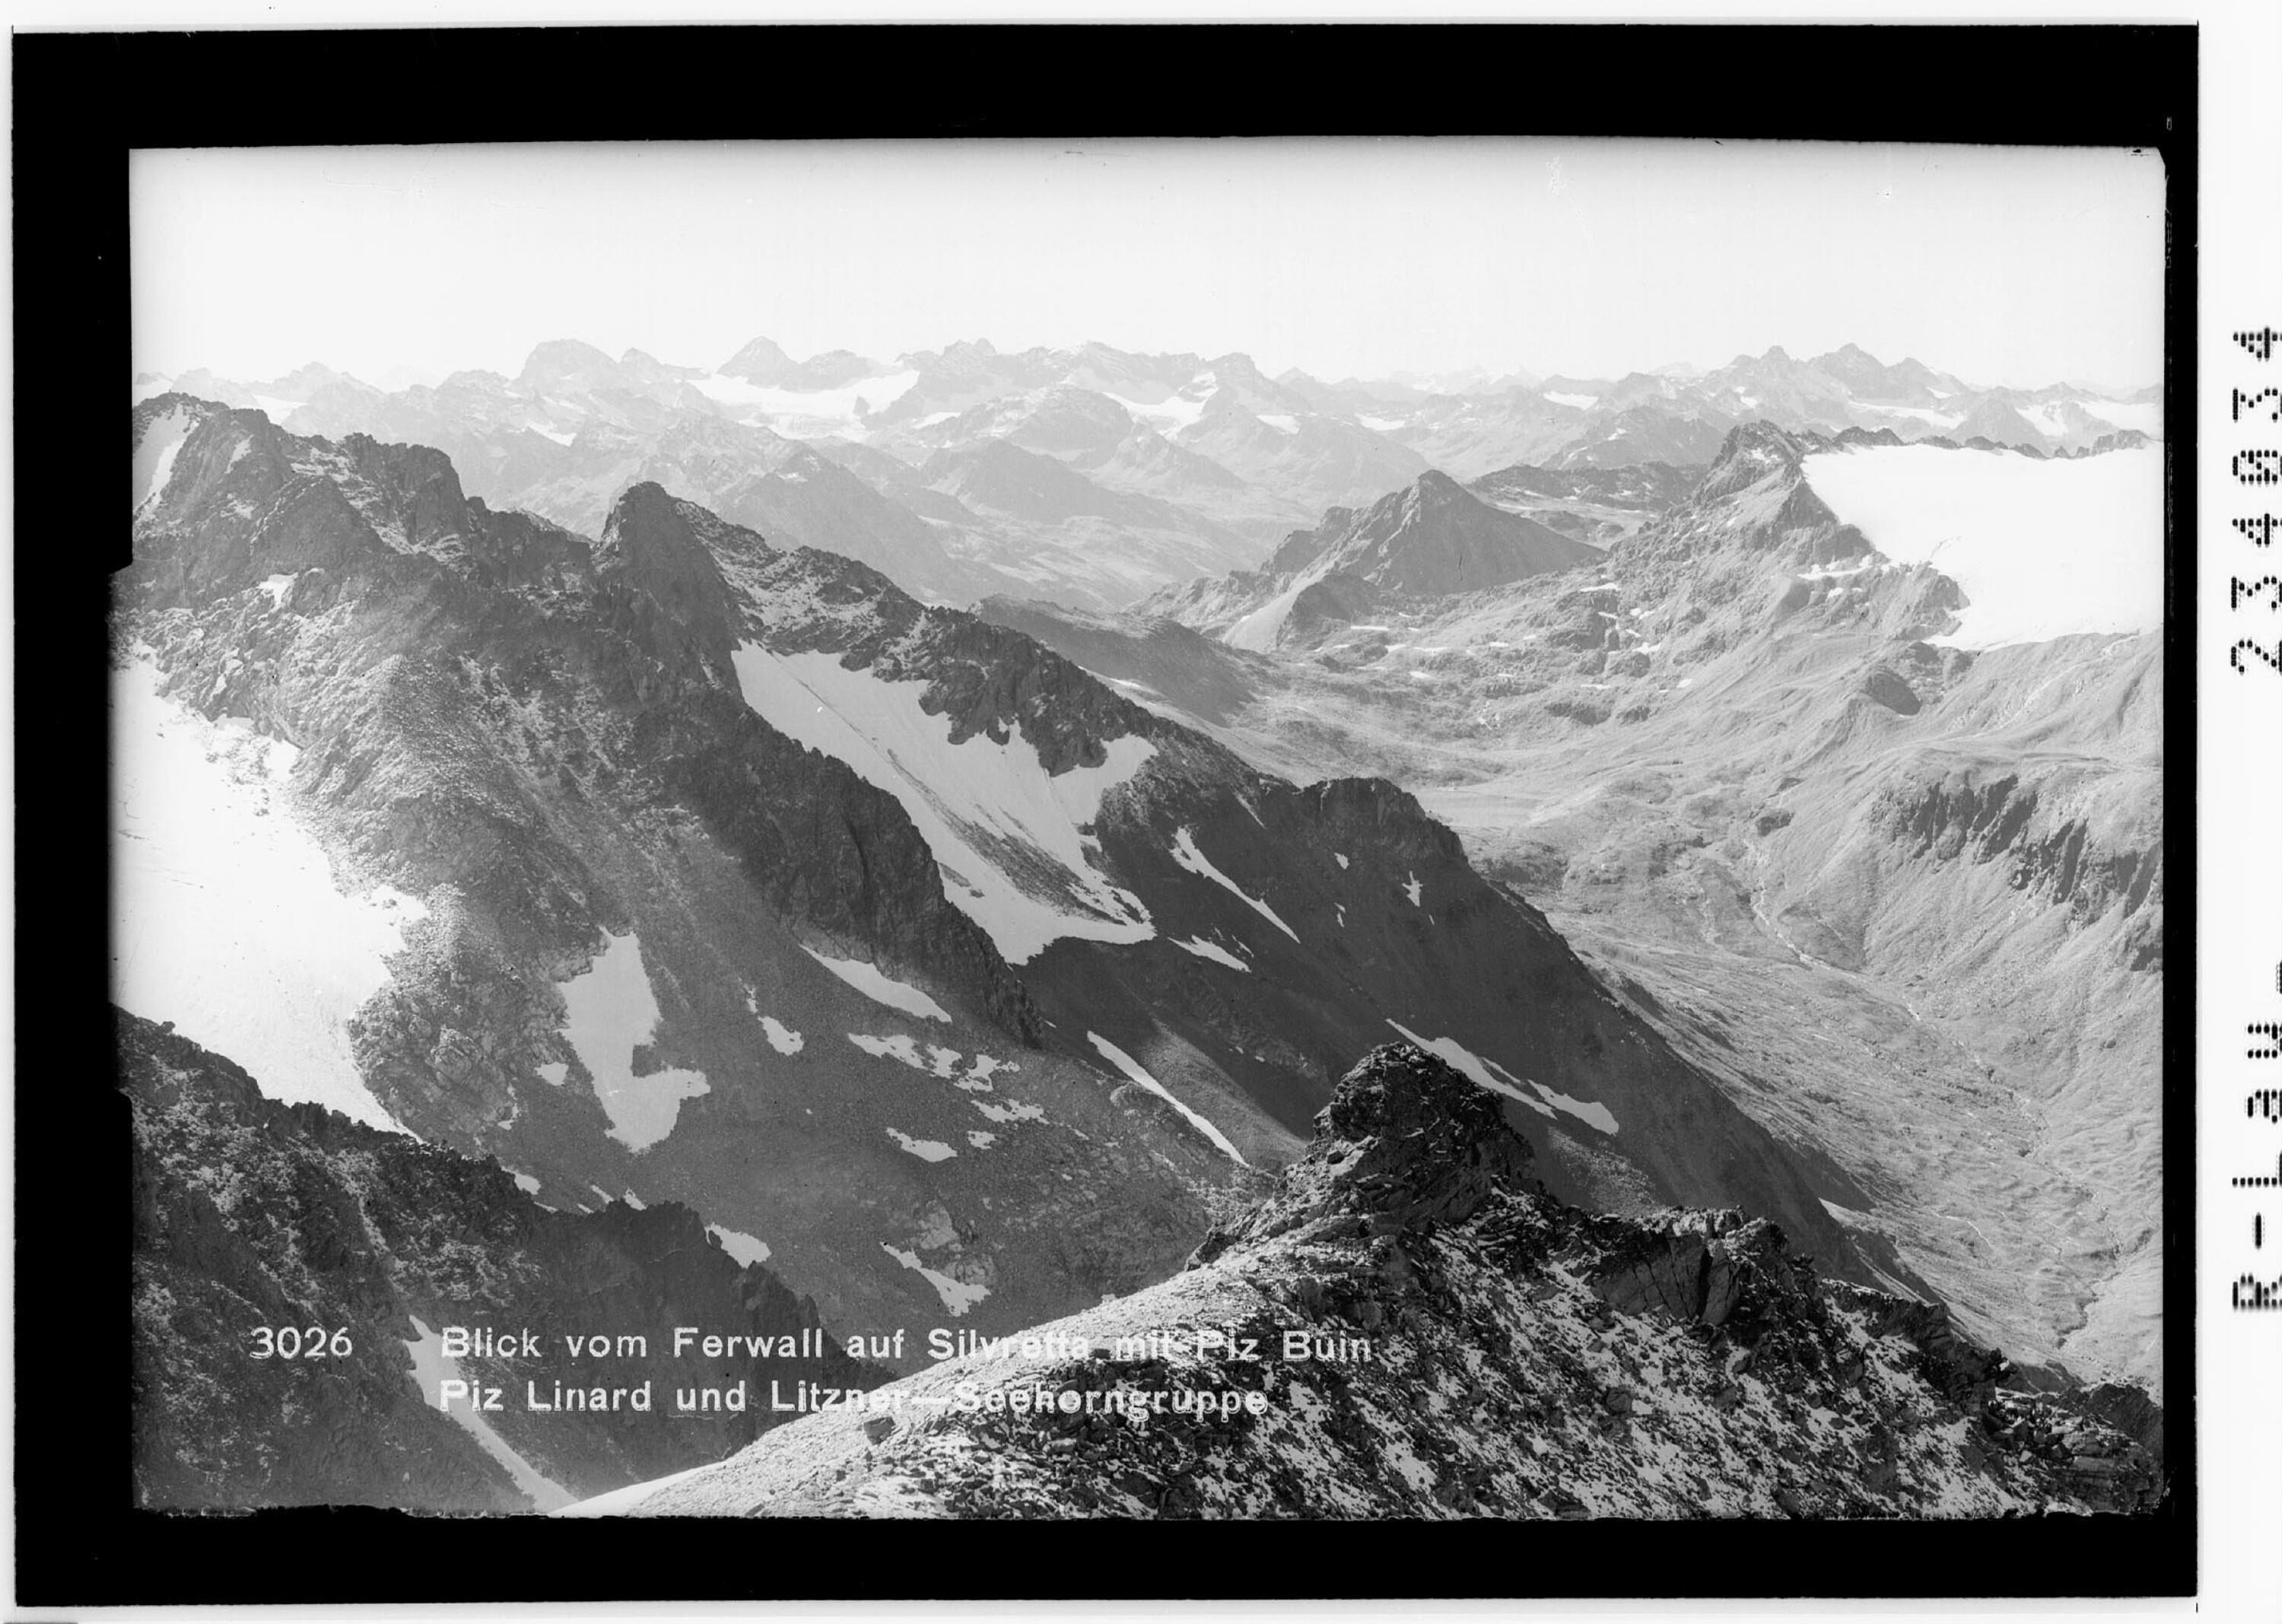 Blick vom Ferwall auf Silvretta mit Piz Buin, Piz Linard und Litzner - Seehorngruppe></div>


    <hr>
    <div class=